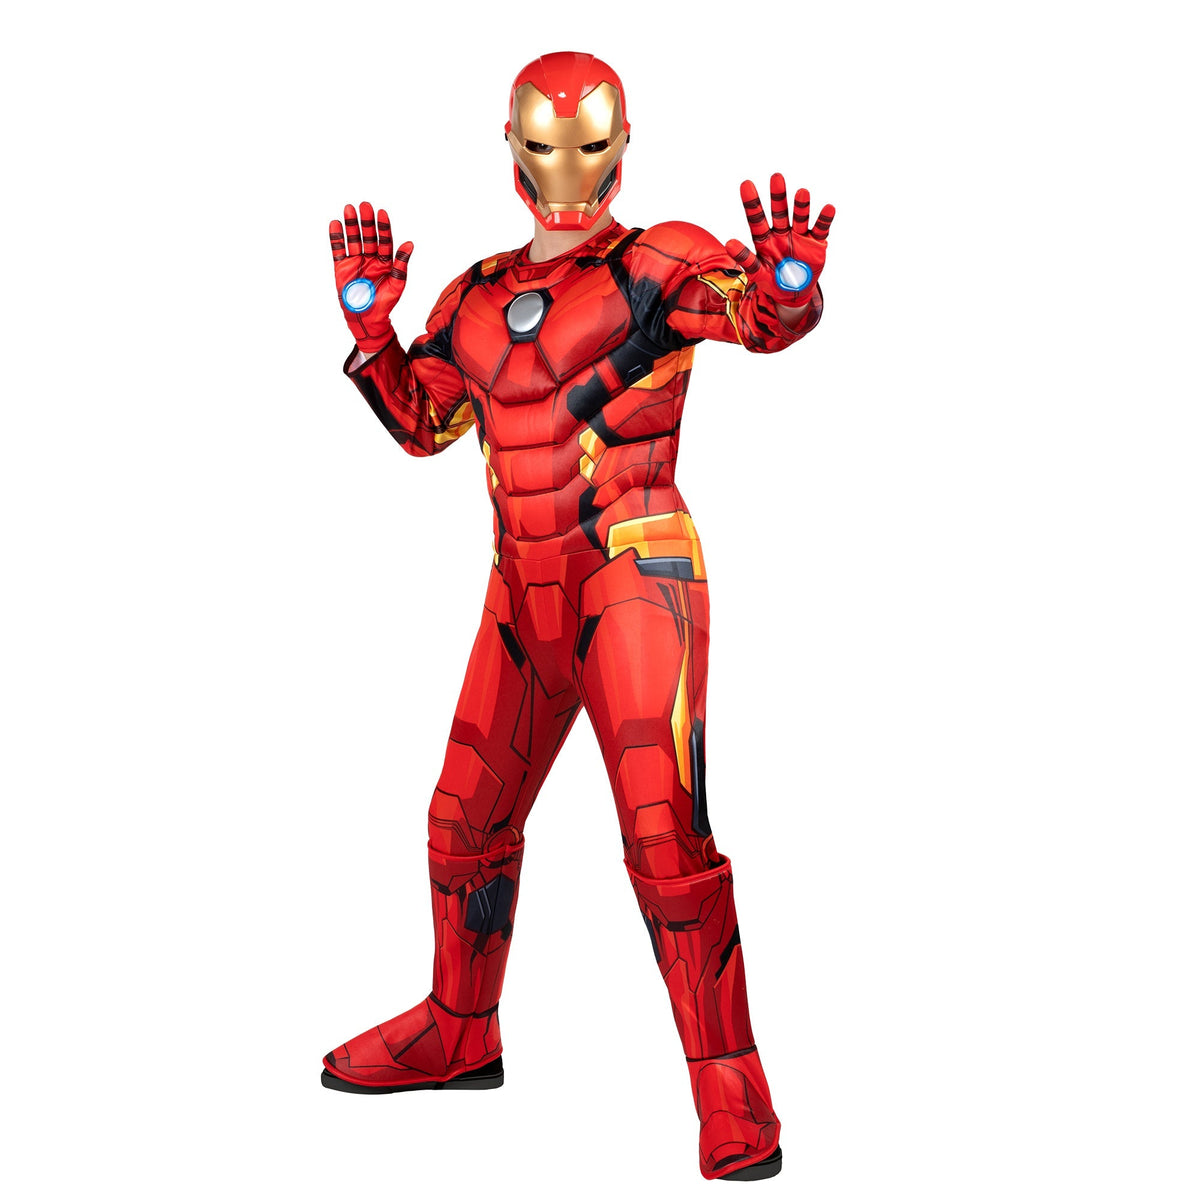 KROEGER Costumes Marvel Avengers Iron Man Premium Costume for Kids